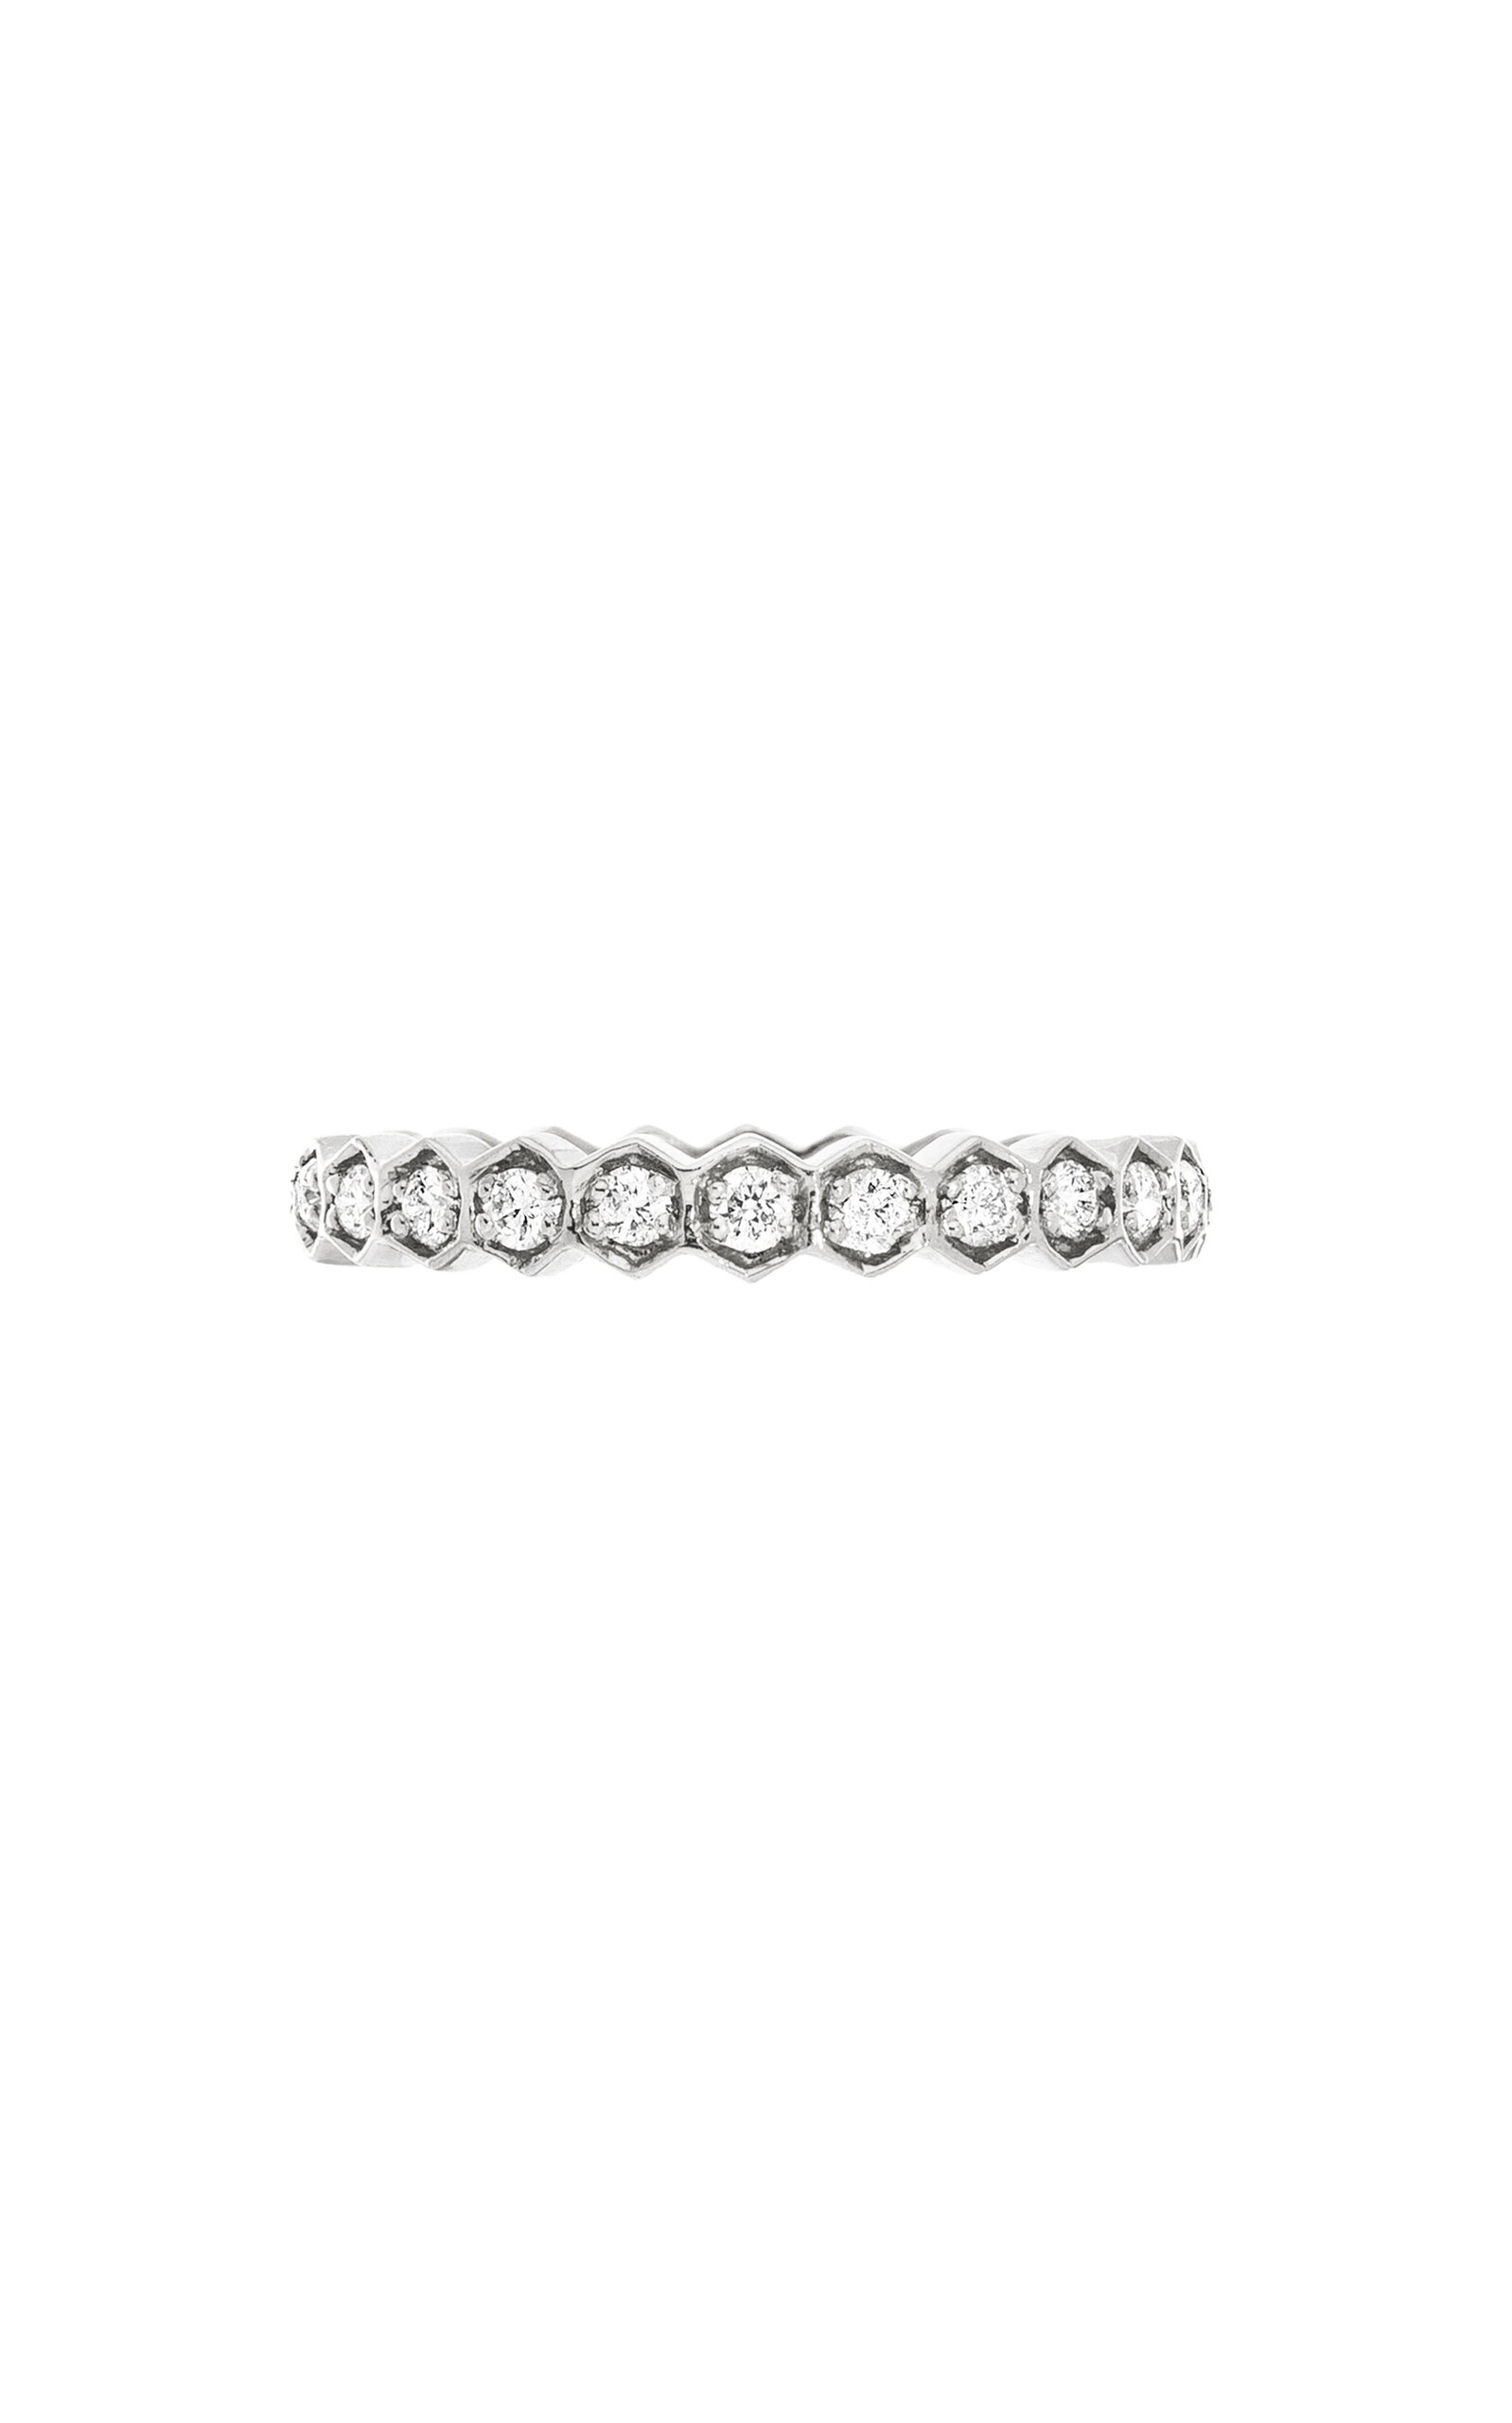 The Regency 18K White Gold Diamond Ring